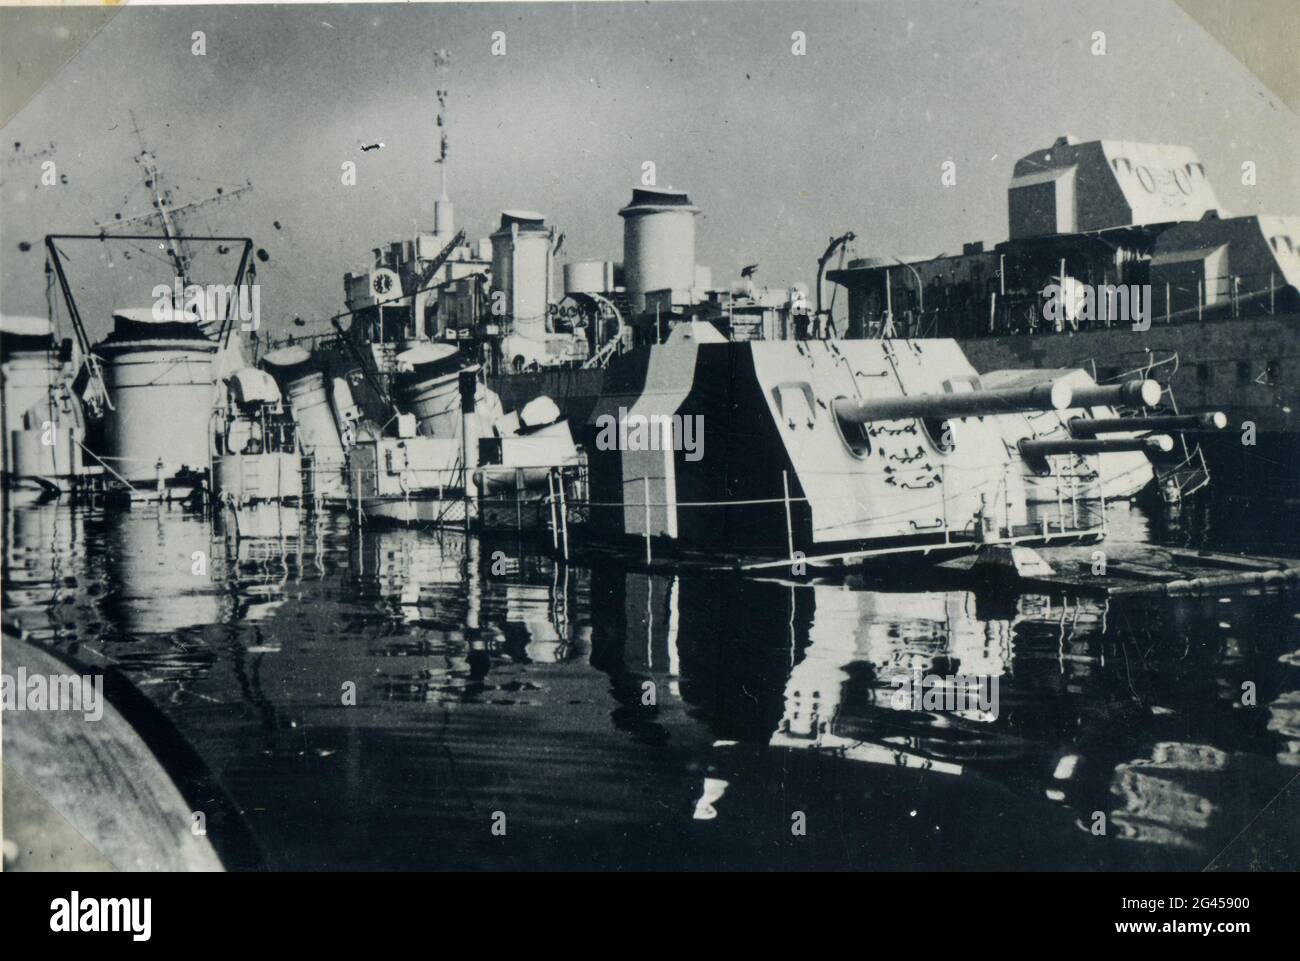 Événements : Seconde Guerre mondiale / Seconde Guerre mondiale, France, scutling de la flotte française à Toulon, 27.11.1942, navires de guerre endommagés Banque D'Images